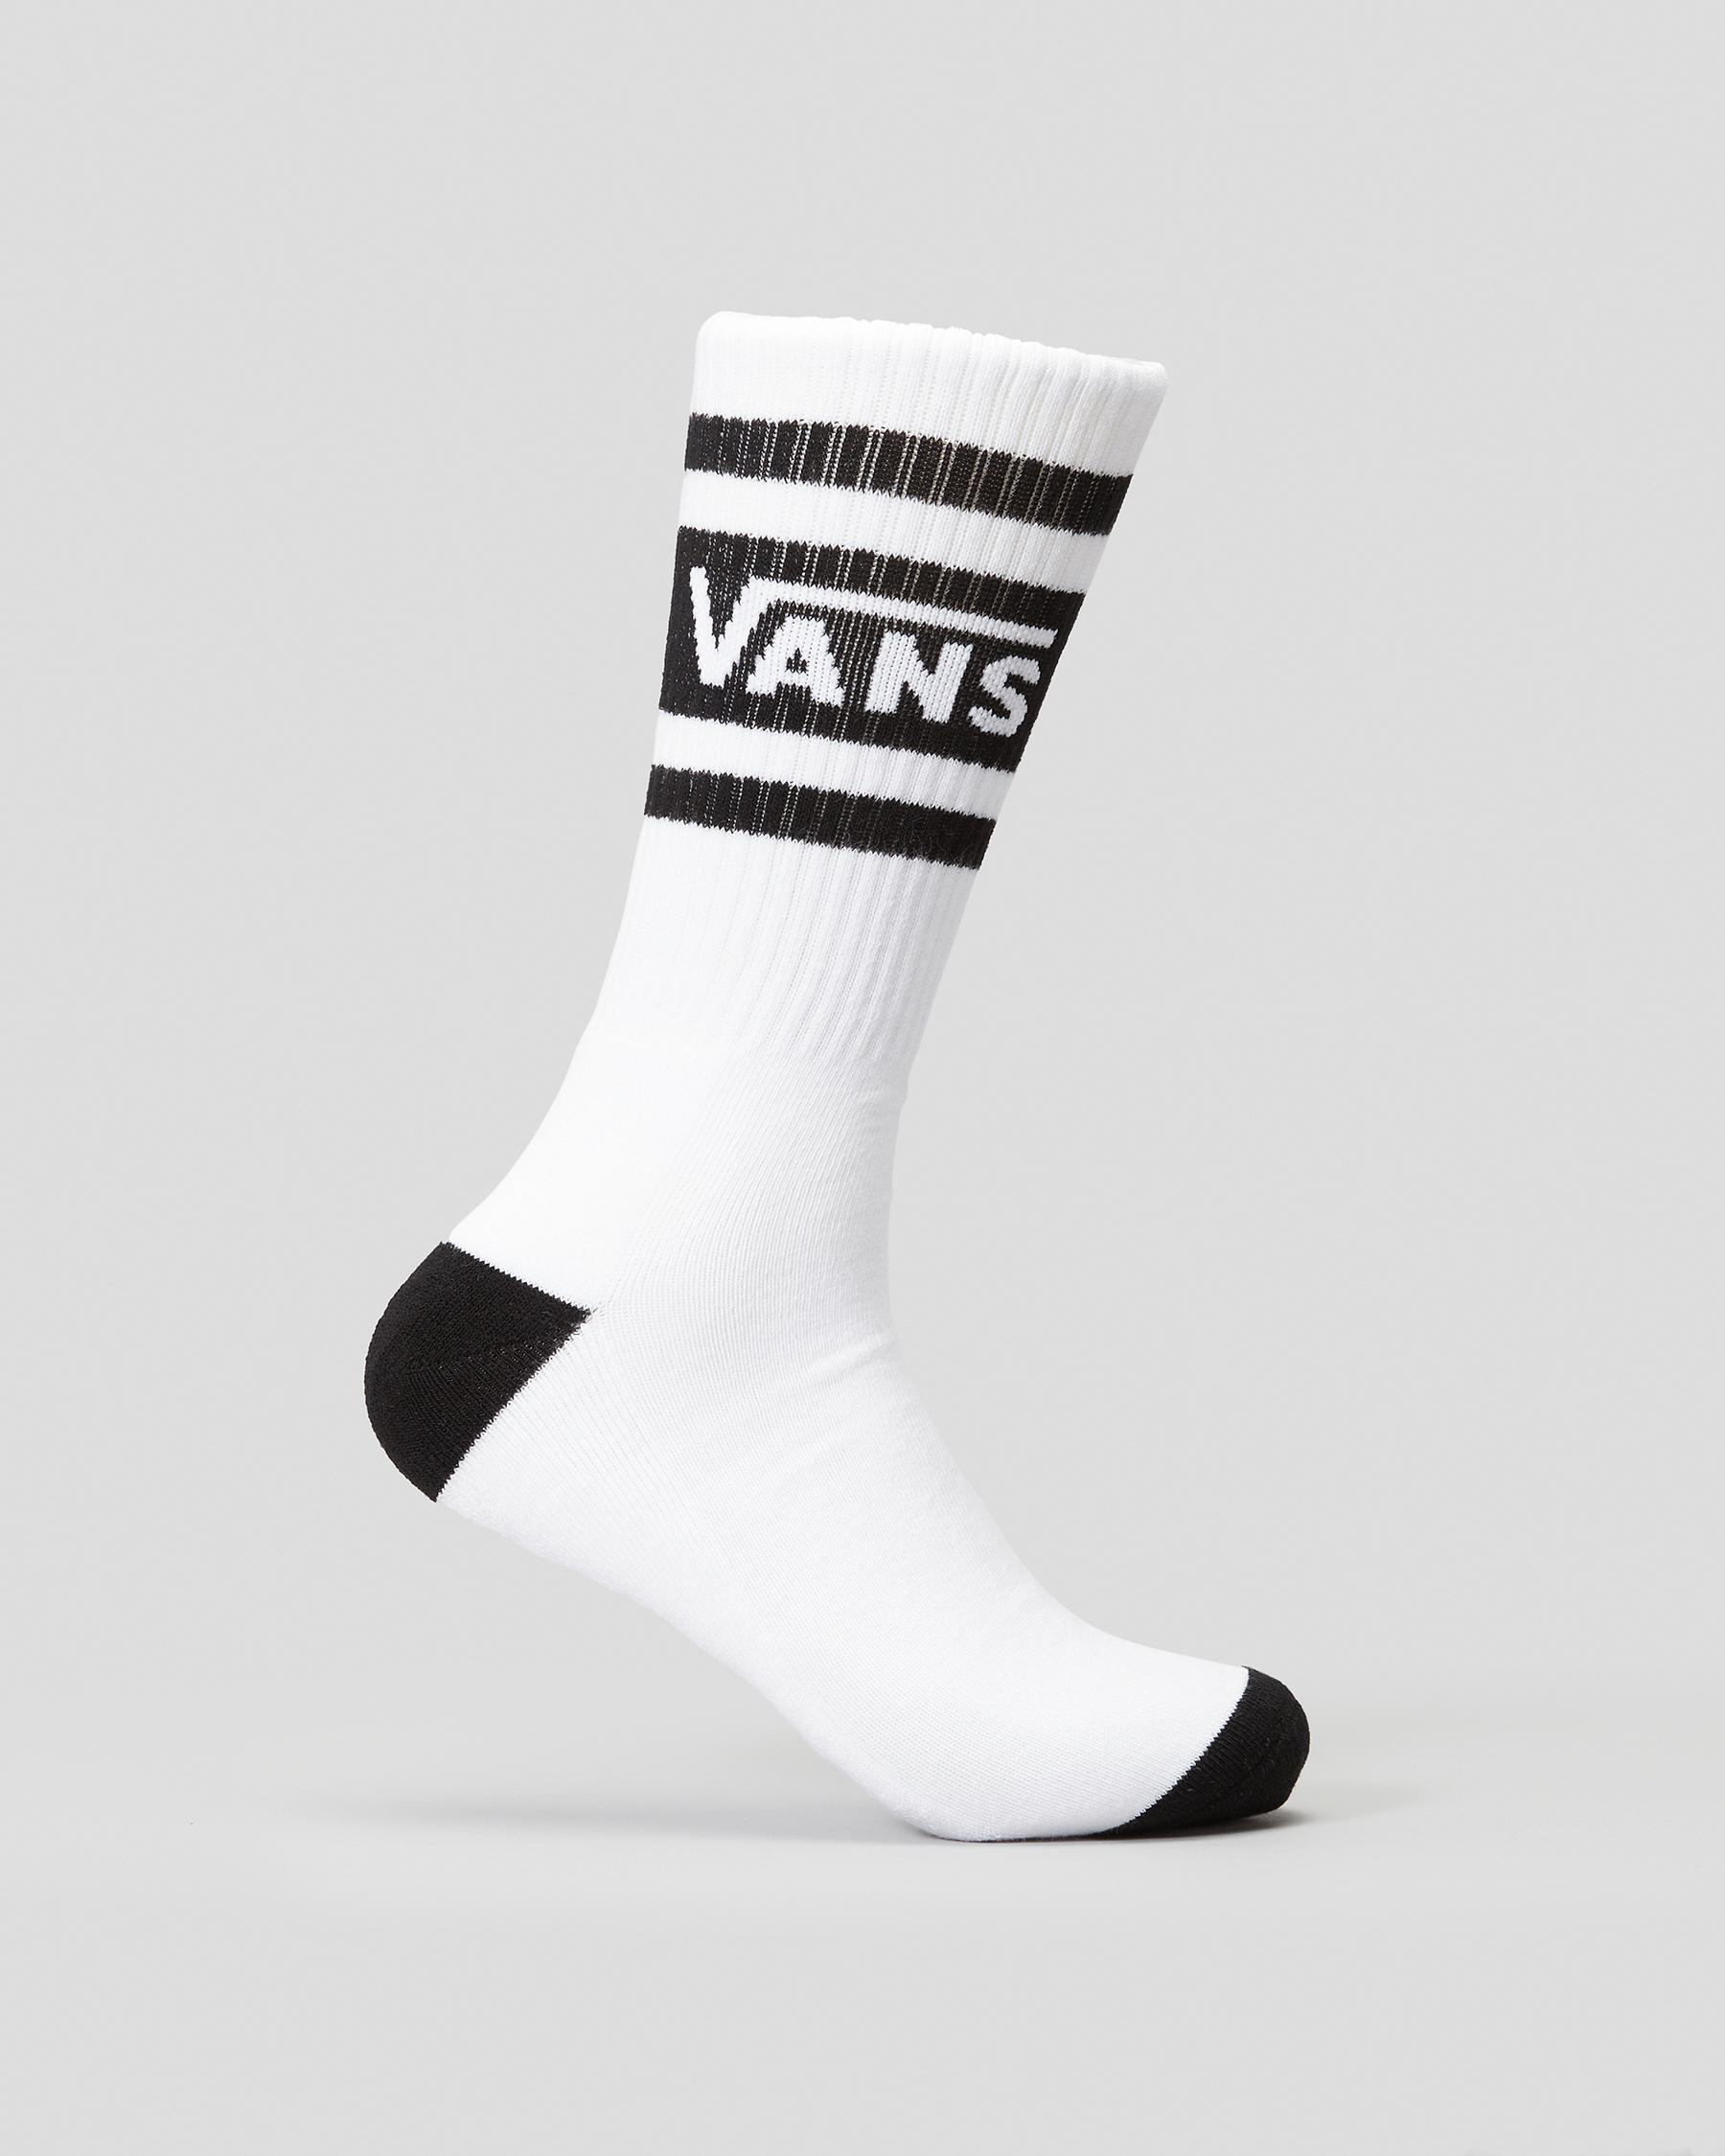 Vans Drop V Crew Socks In White/black - Fast Shipping & Easy Returns ...